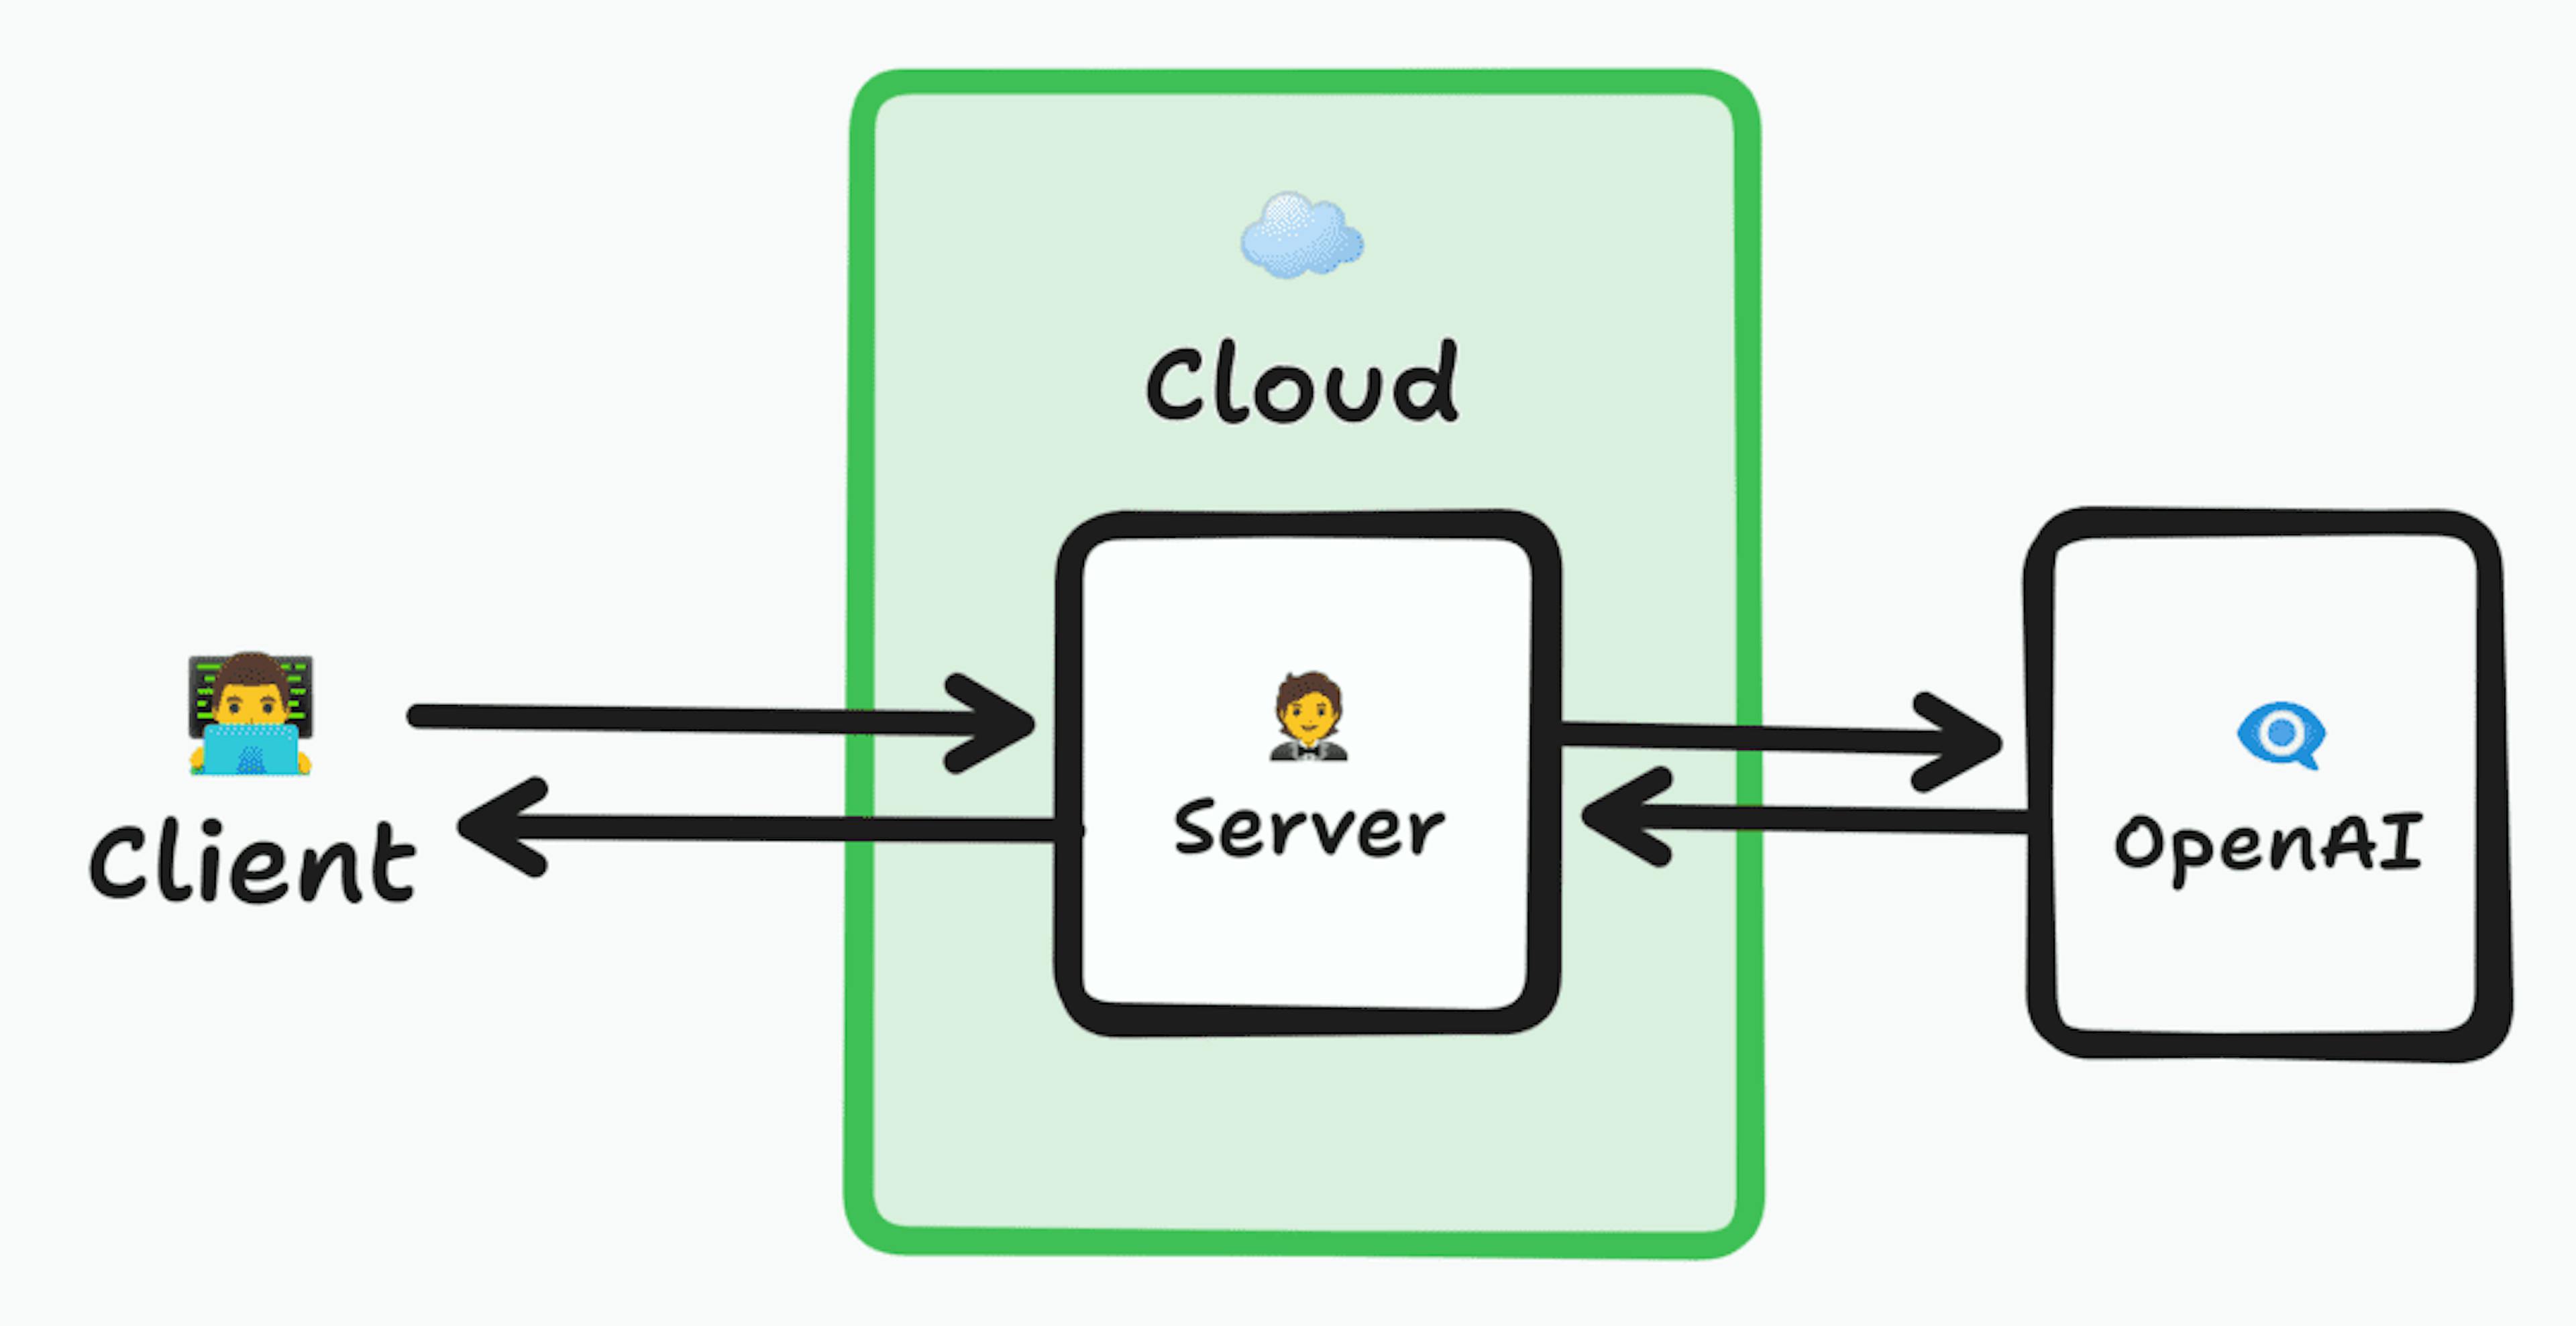 Architekturdiagramm, das einen Client zeigt, der eine Verbindung zu einem Server in der Cloud herstellt, der die Anfrage an OpenAI weiterleitet, dann zum Server und zurück zum Client zurückkehrt.